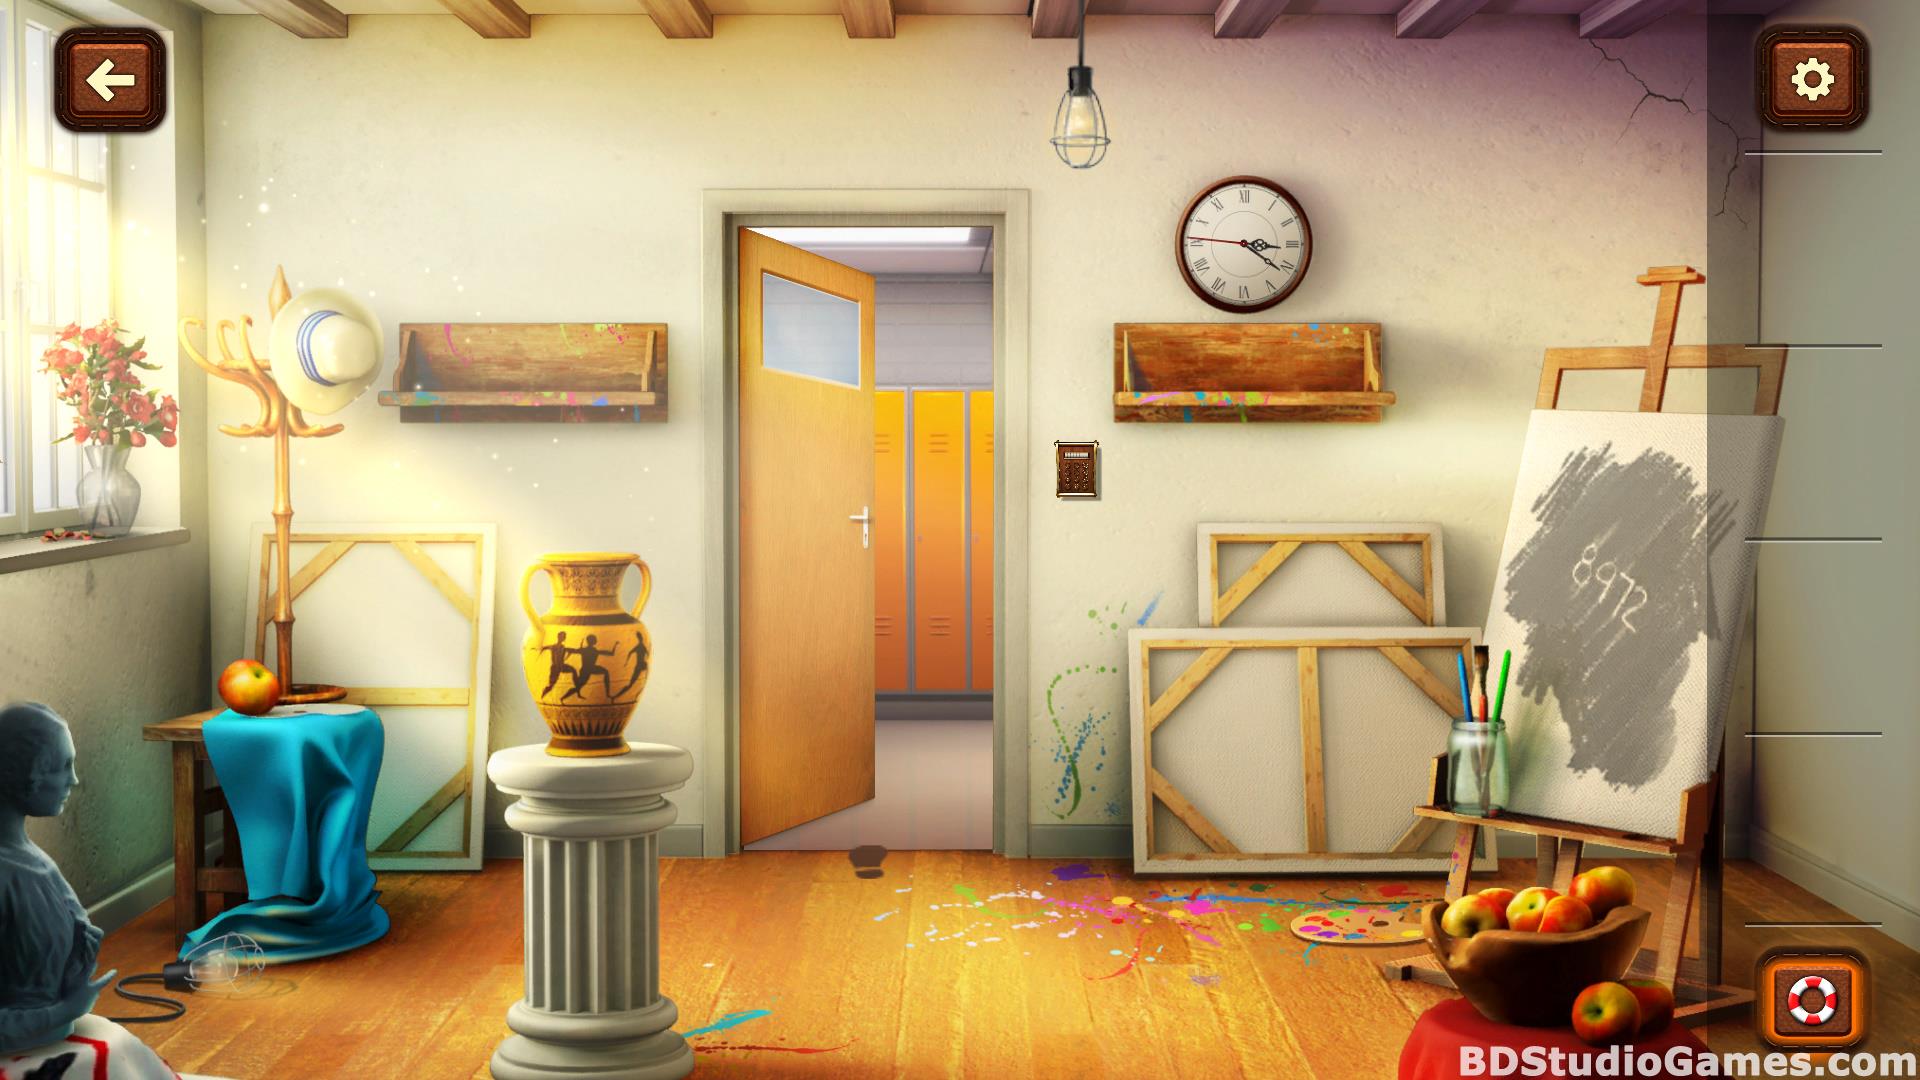 100 Doors Games: Escape From School Free Download Screenshots 16